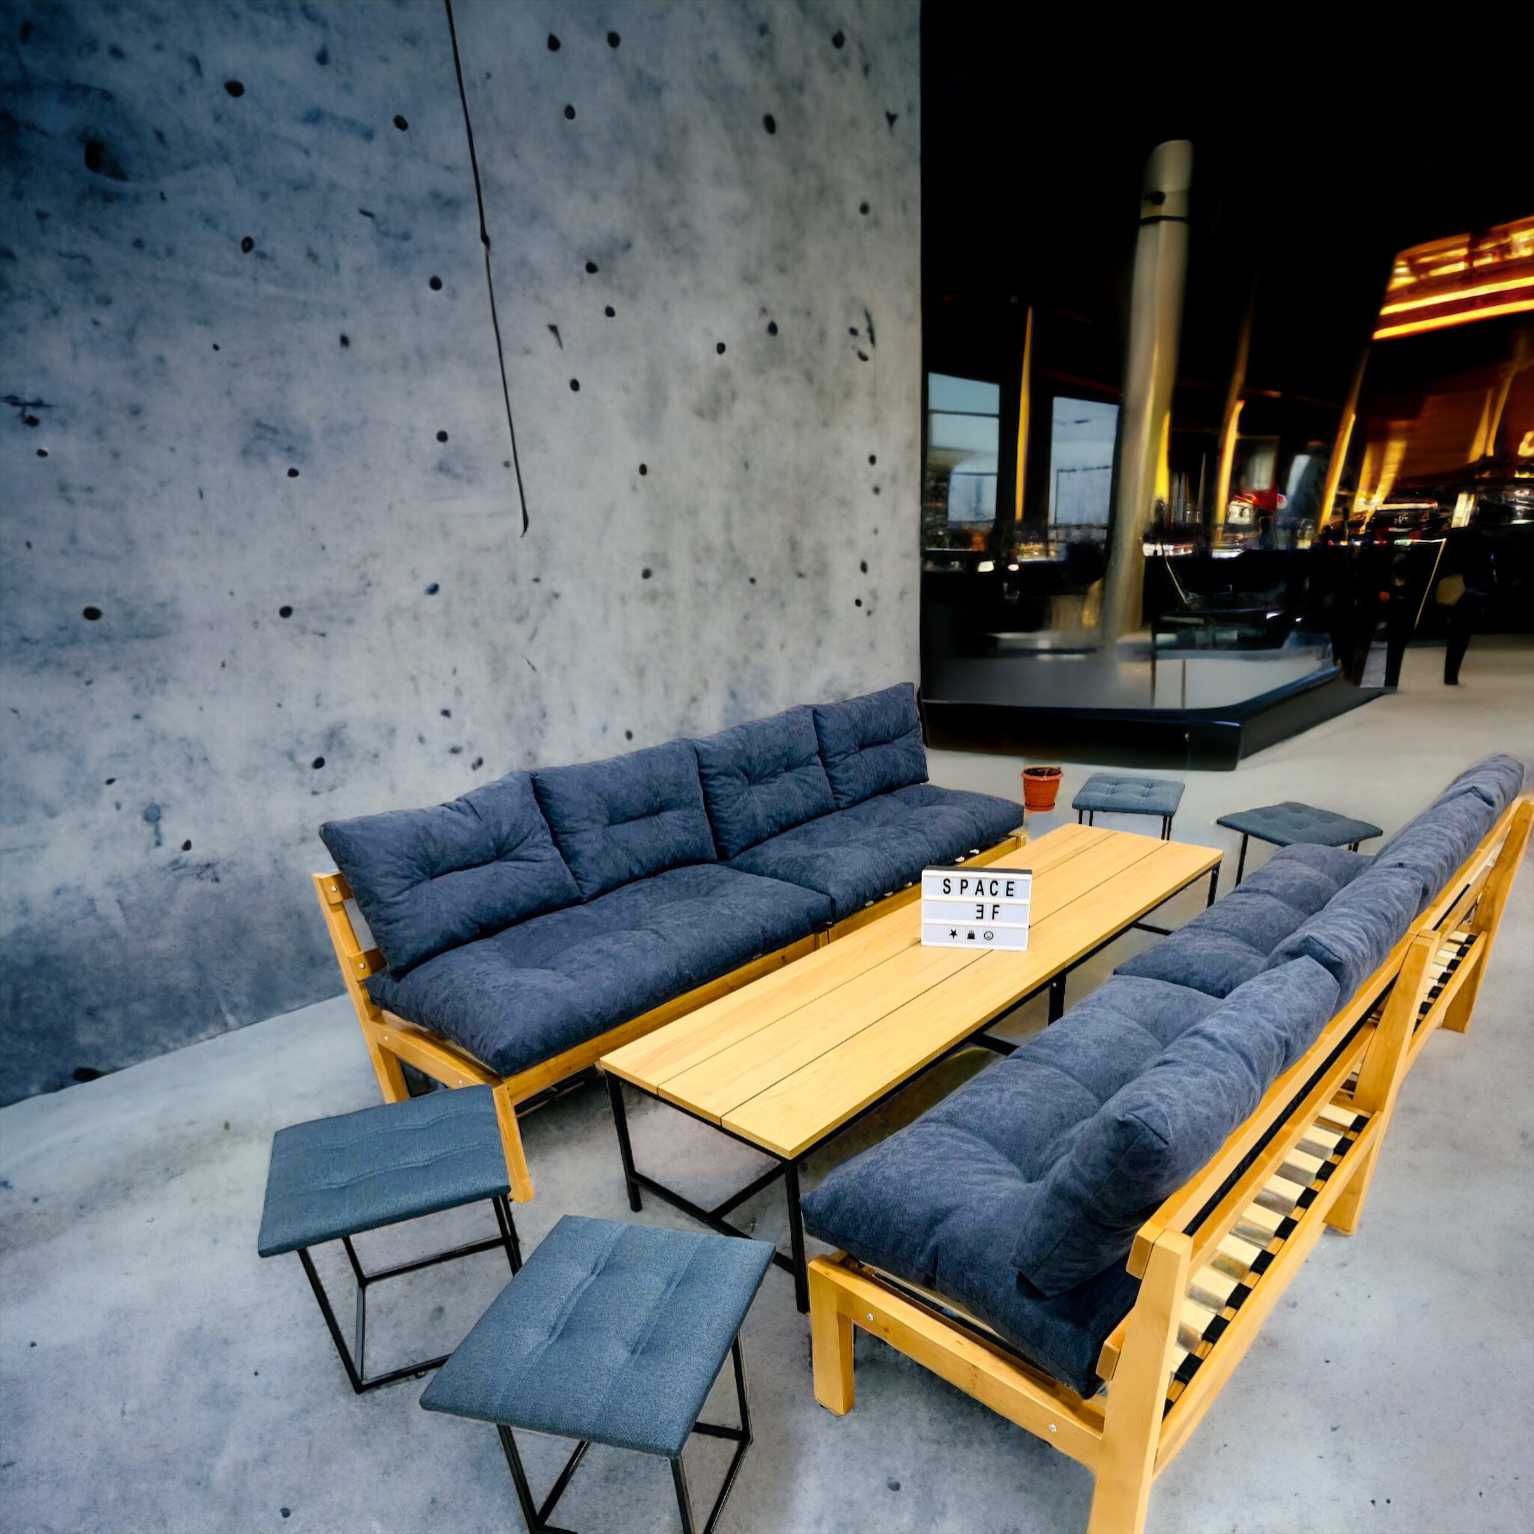 АКЦИЯ Мебель в стиле loft столы,диваны кресла для кафе,ресторанов,